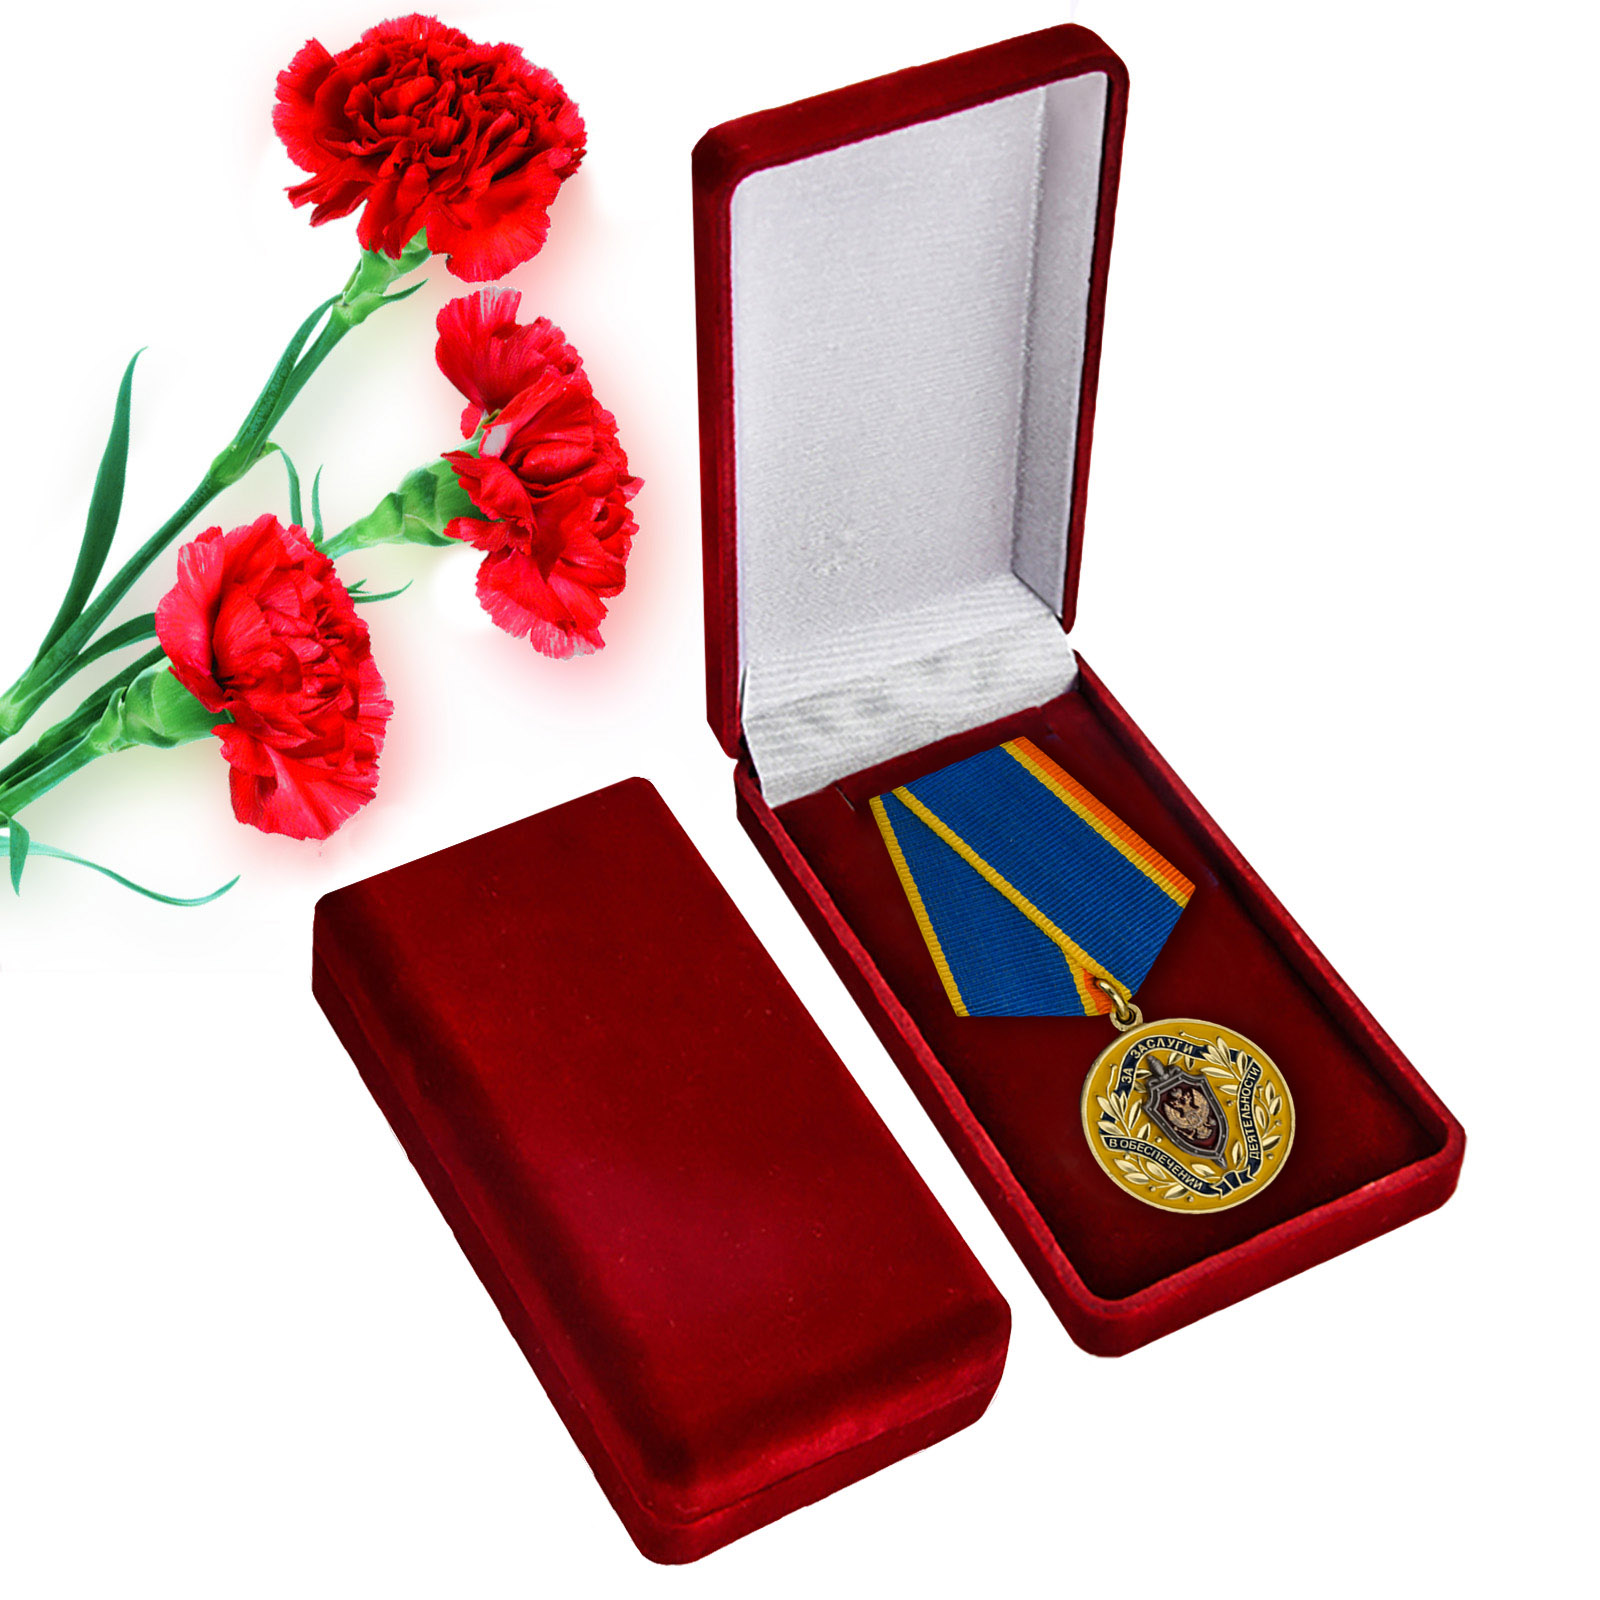 Медаль "За заслуги в обеспечении деятельности"